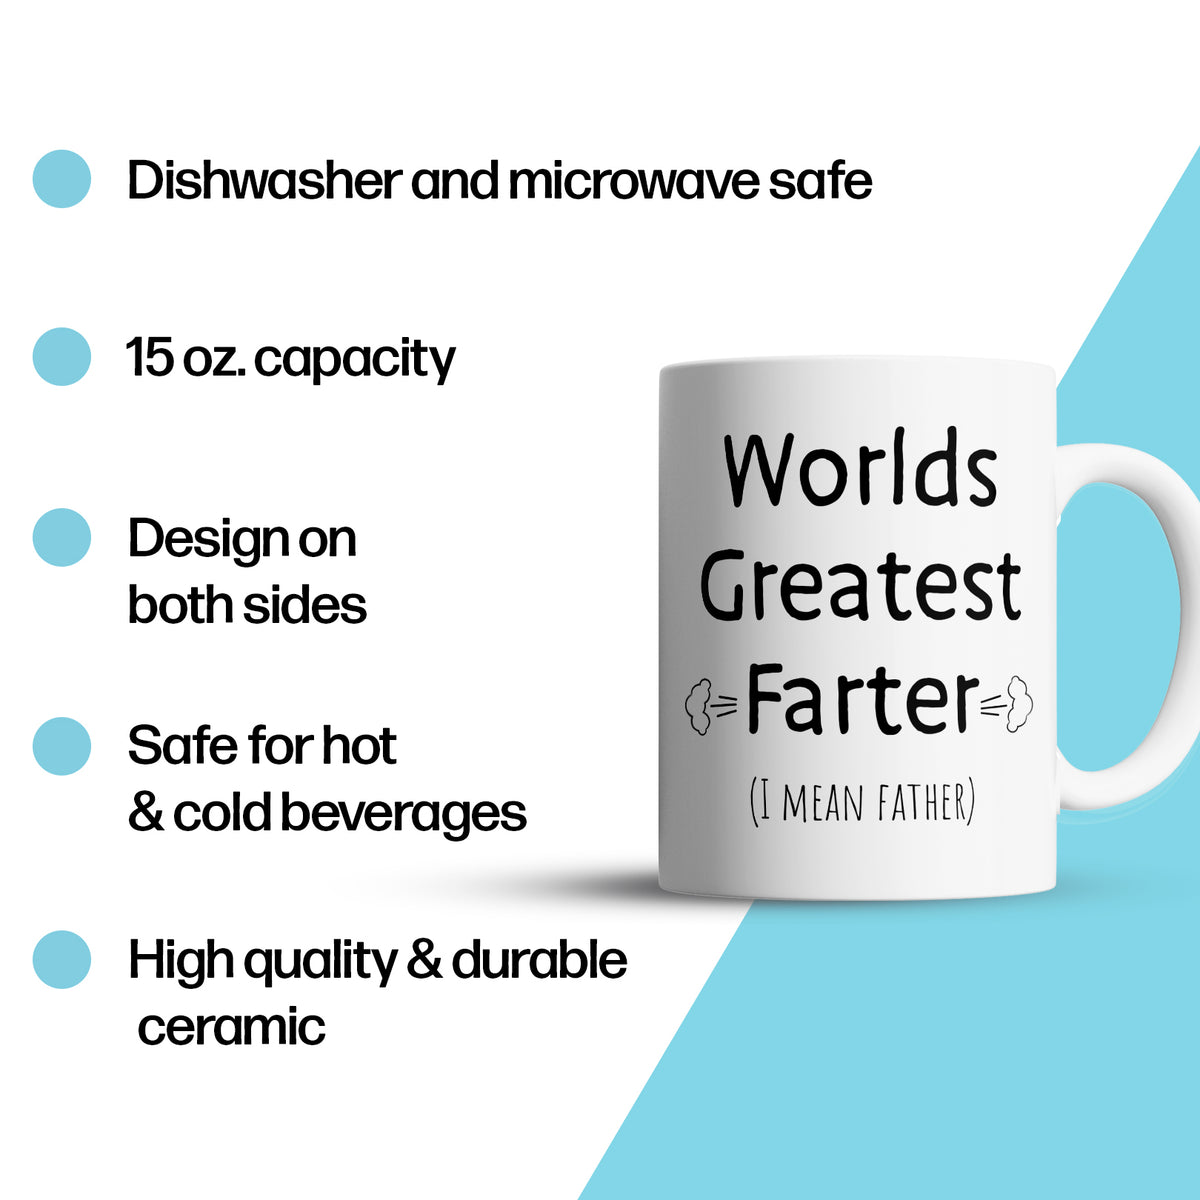 “World's Greatest Farter" Large 15oz Mug - Funny Gift for Dad